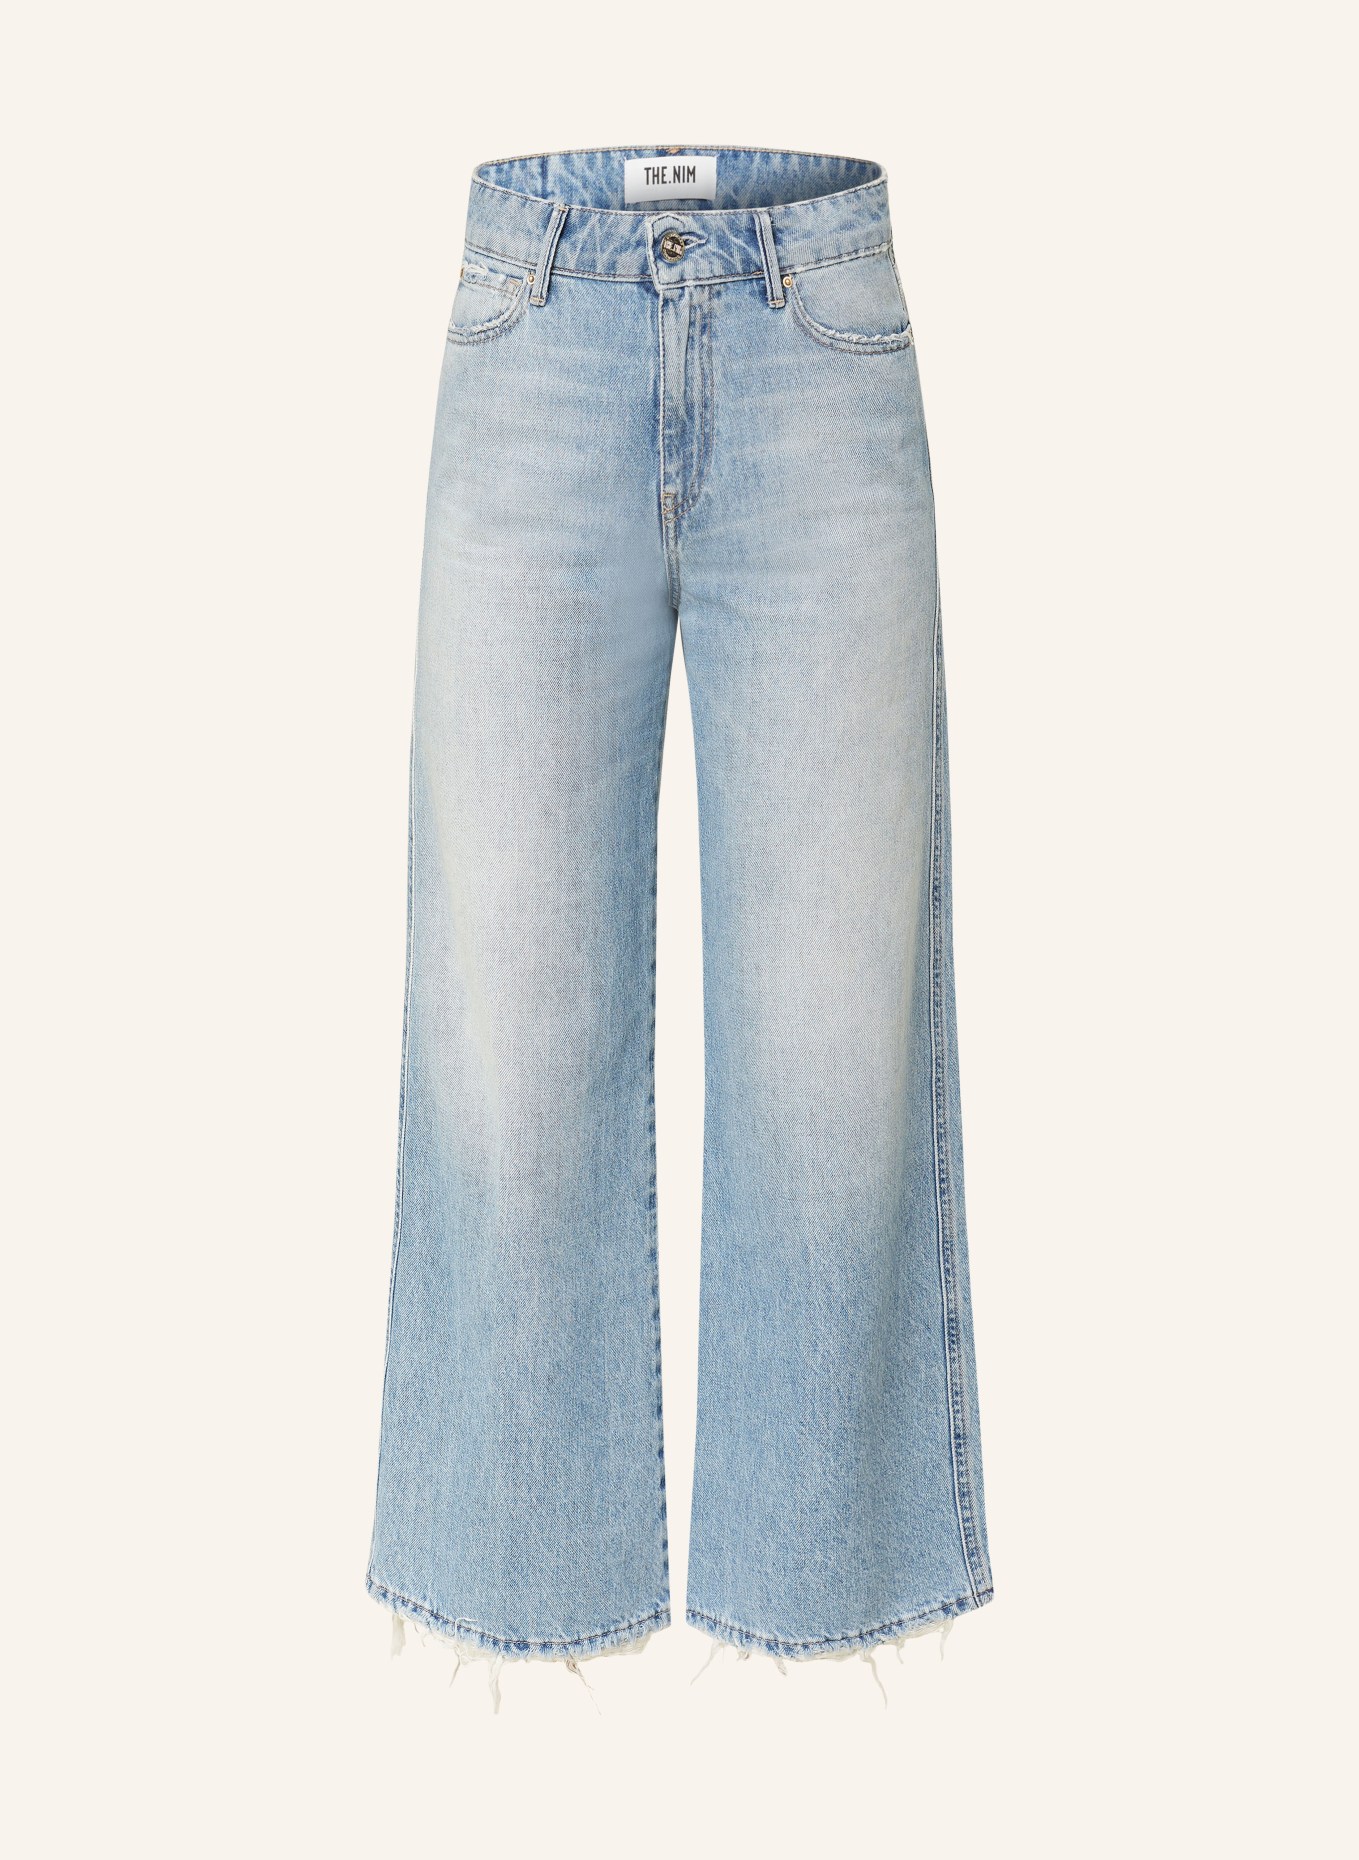 THE.NIM STANDARD Culotte jeans DEBBIE, Color: W721-LGW LIGHT BLUE (Image 1)